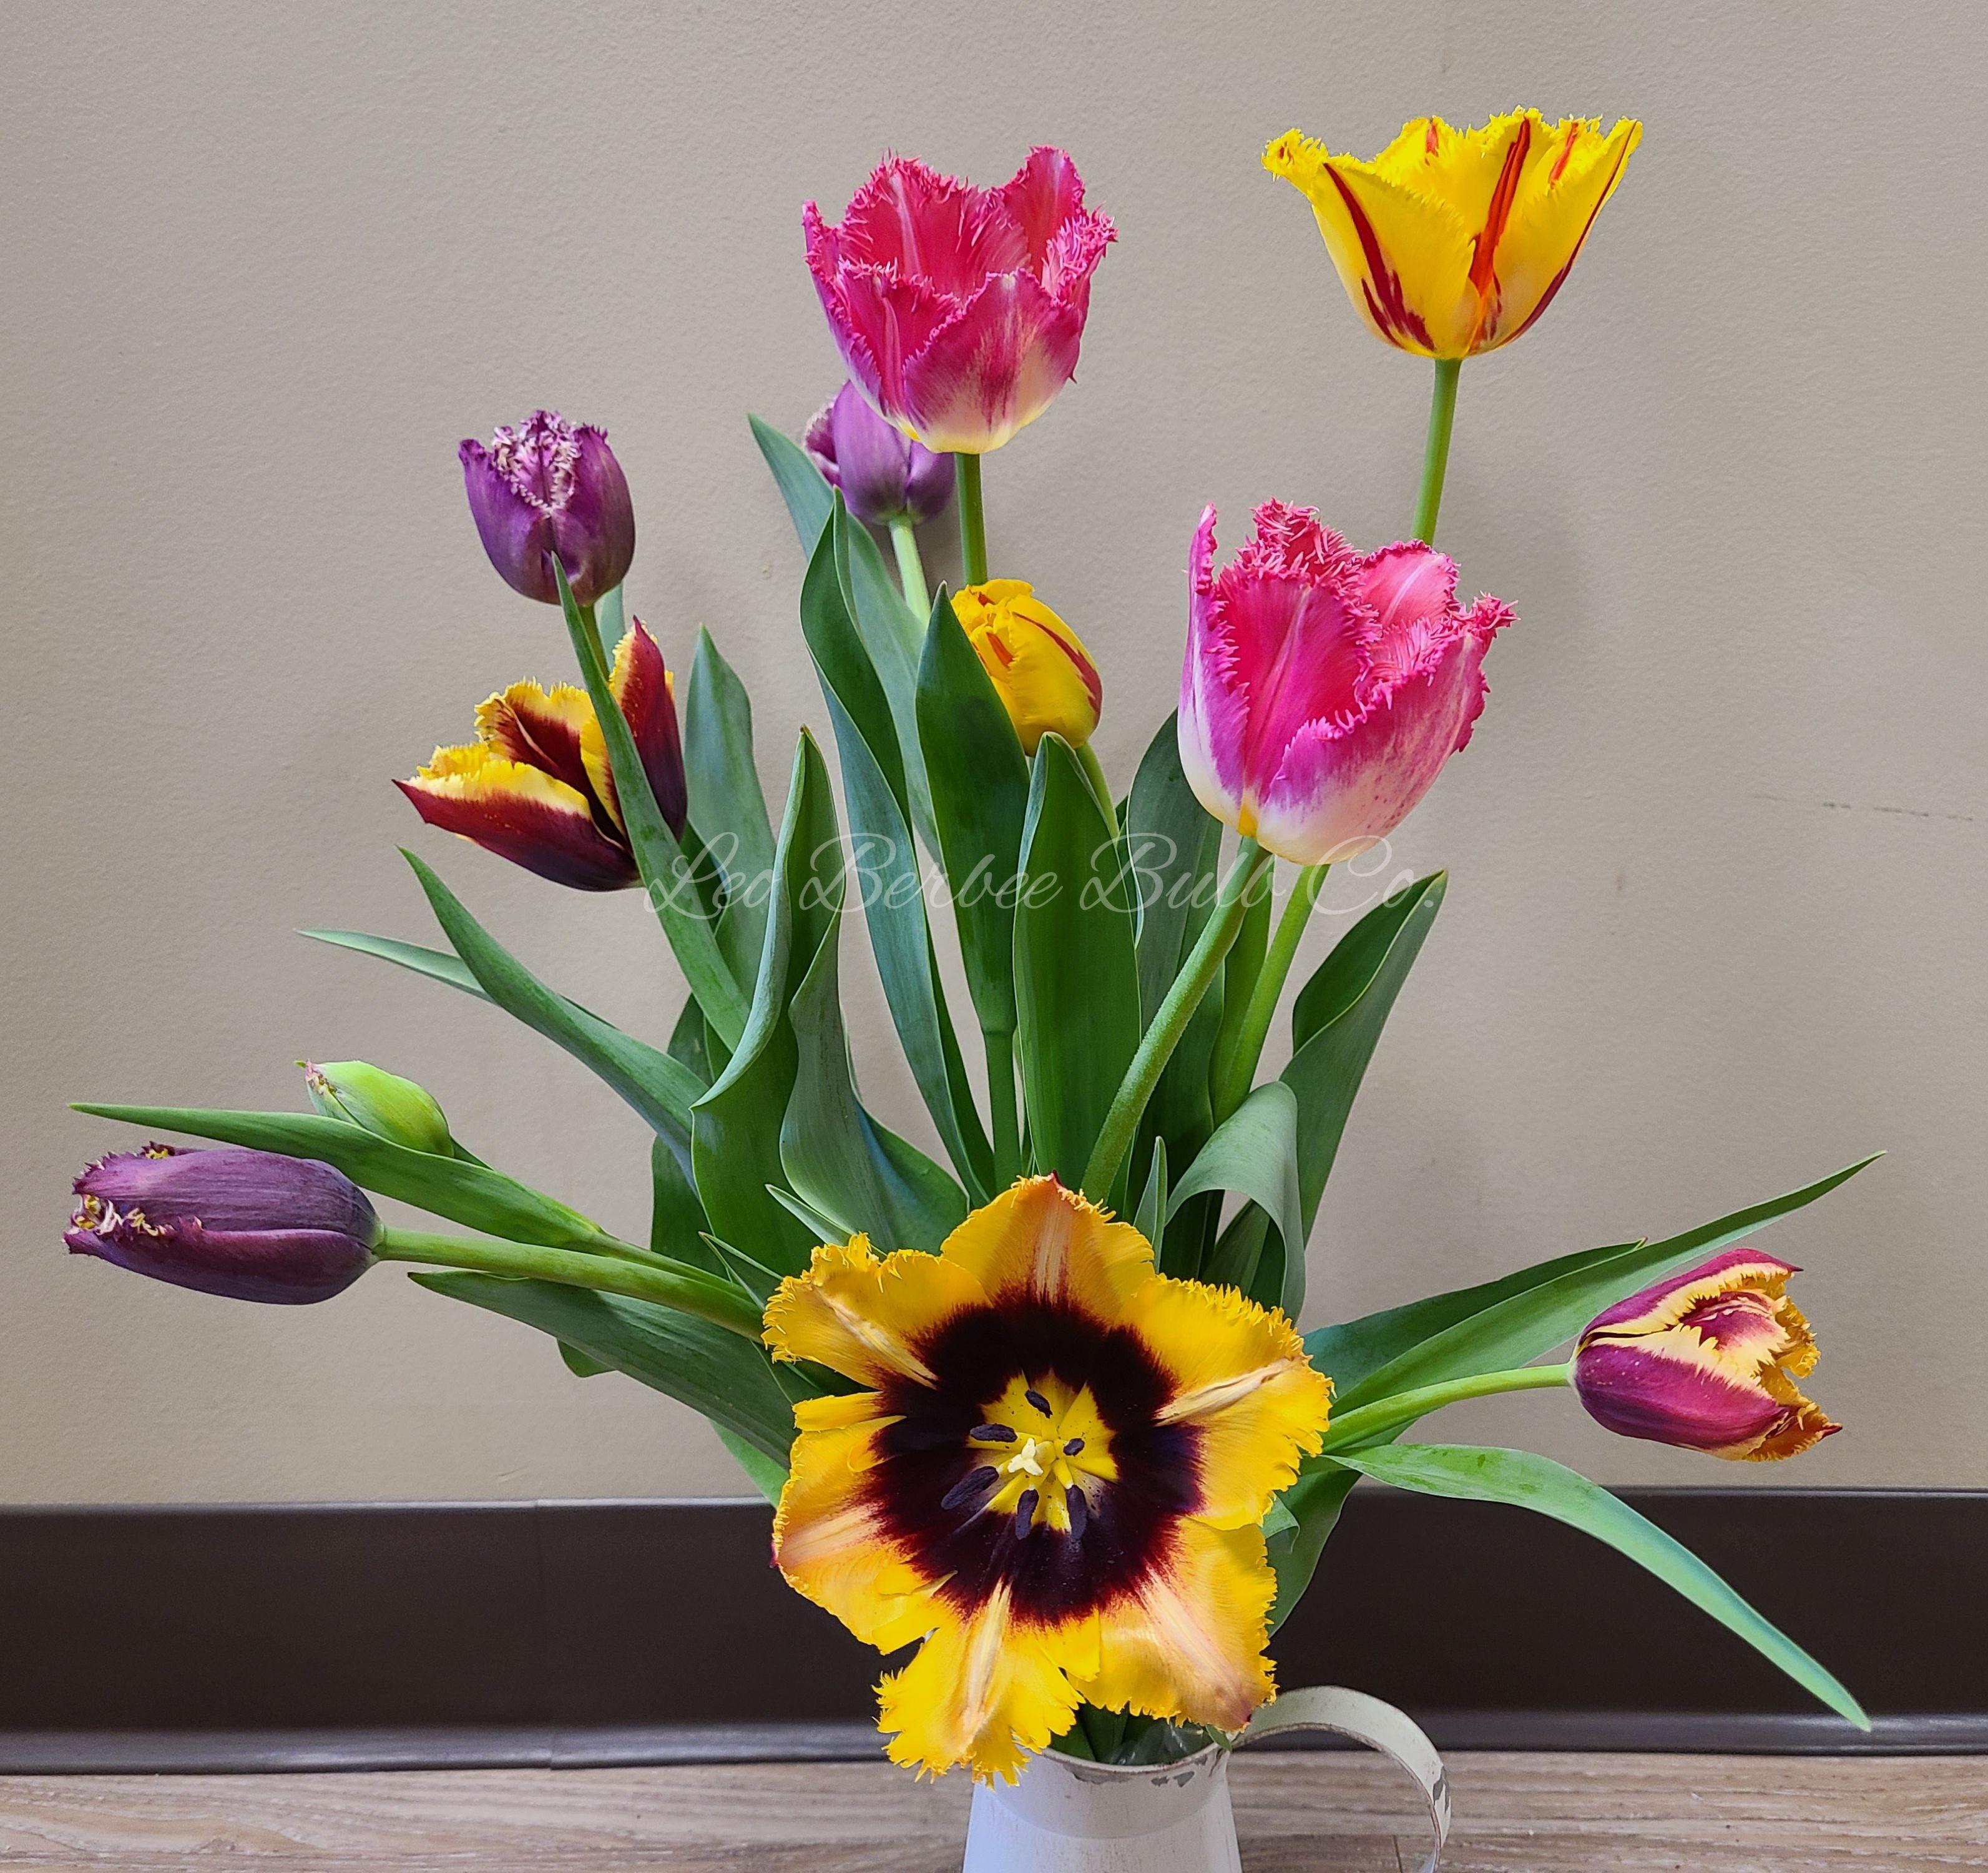 Tulip Fringed 'Mixed' - Tulip from Leo Berbee Bulb Company